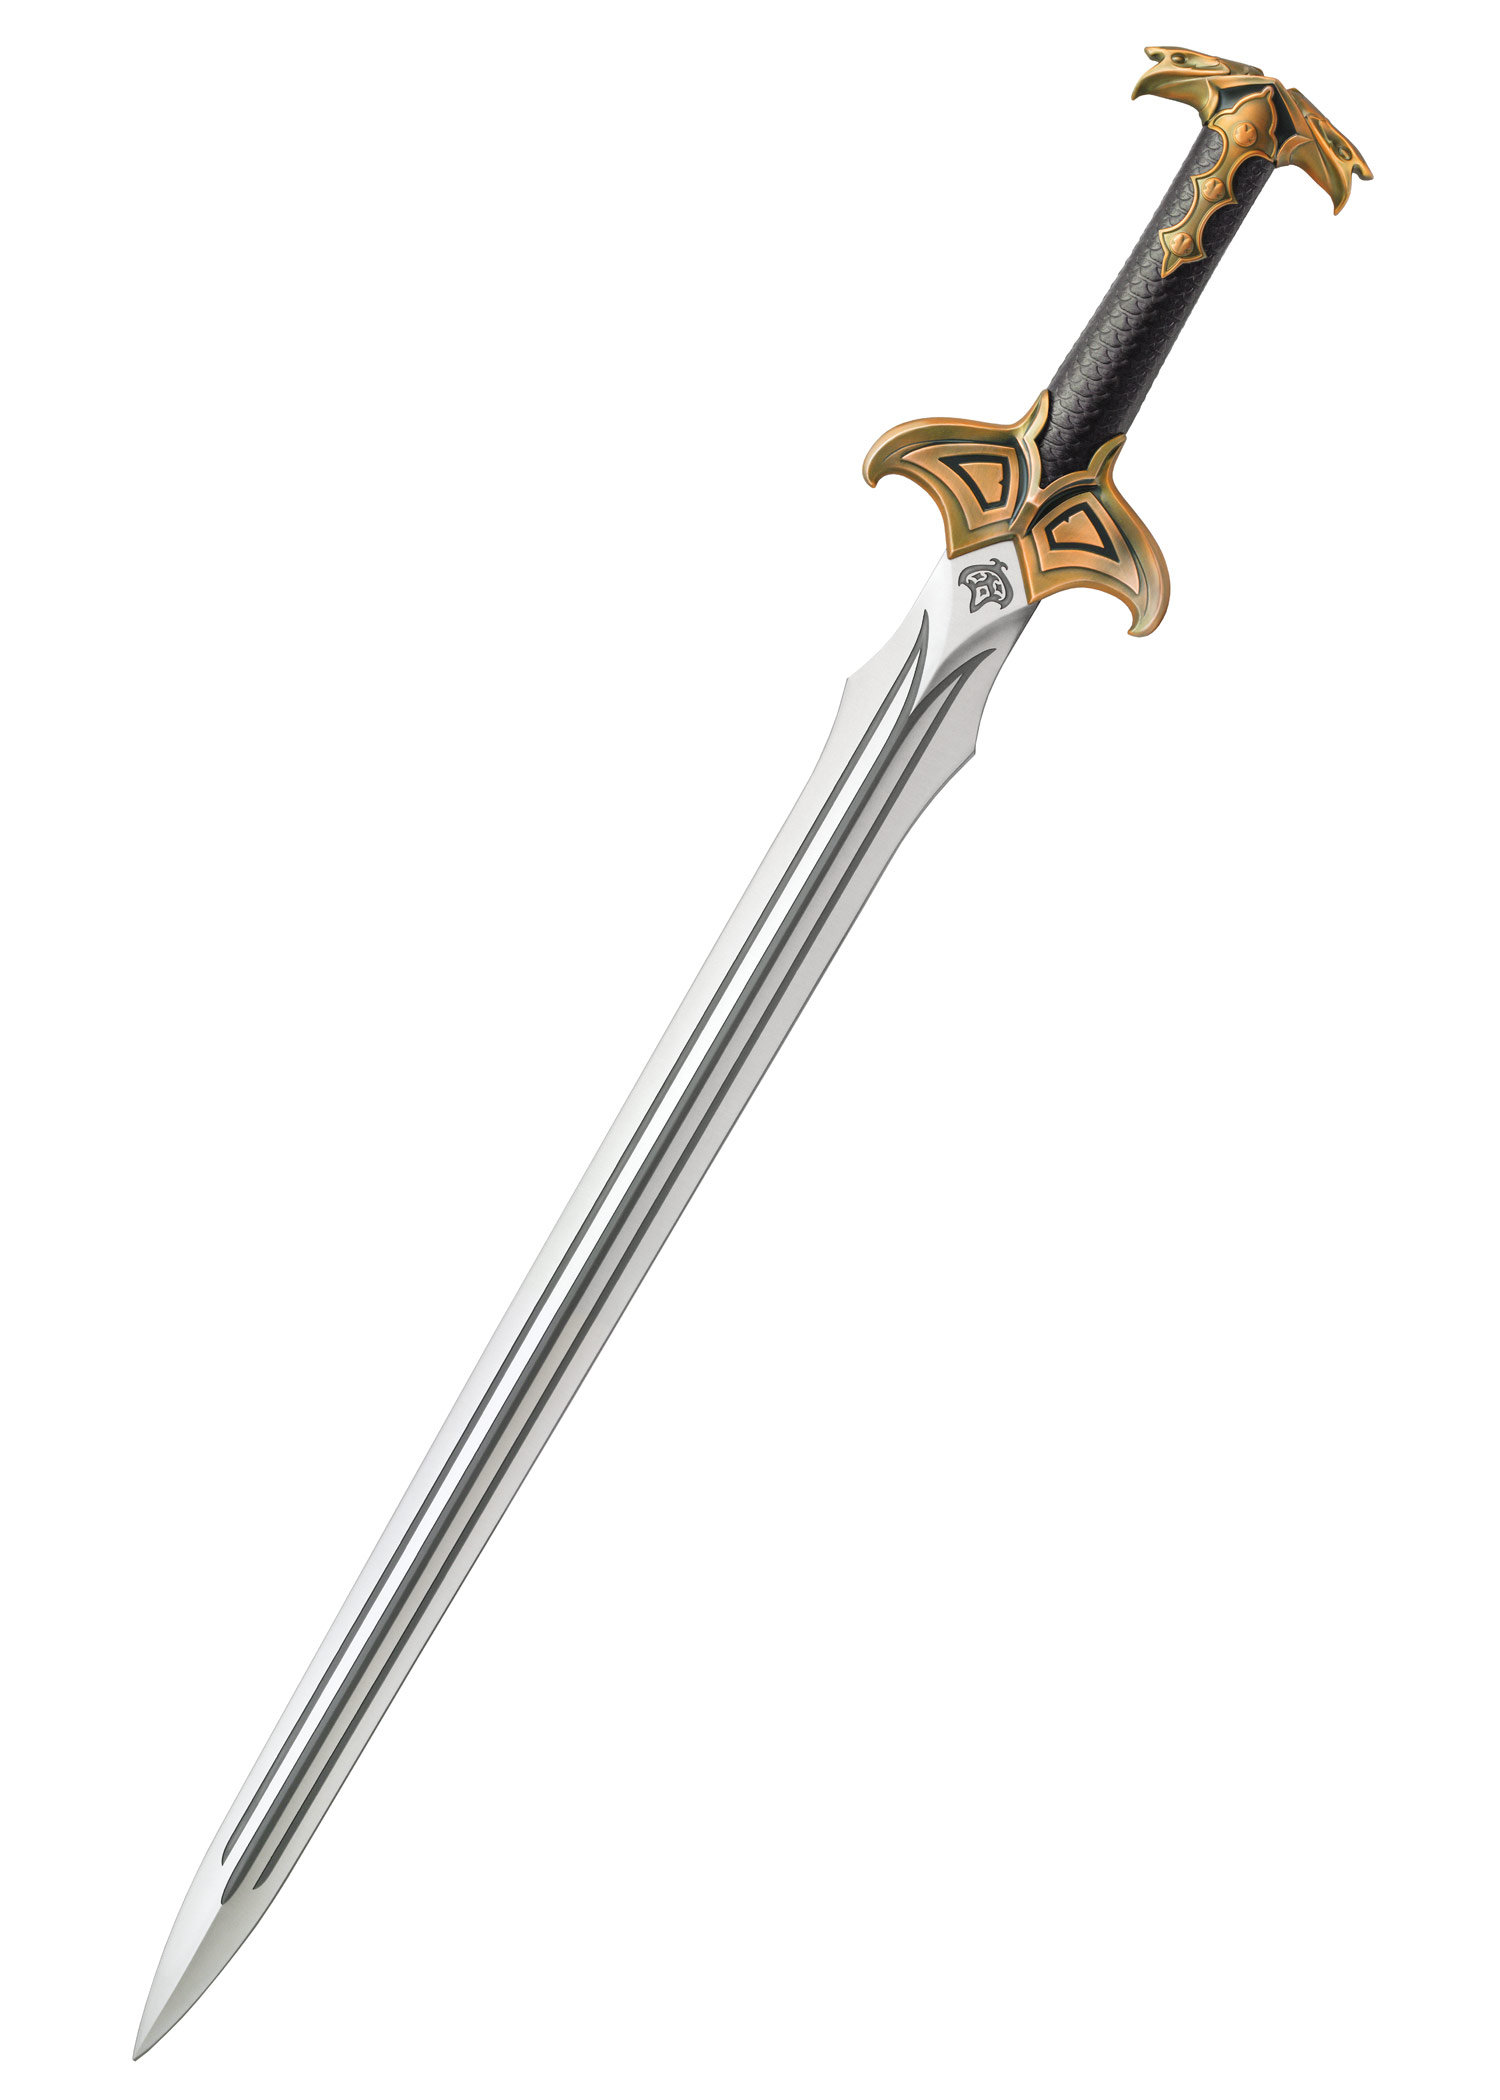 Der Hobbit - Schwert von Bard dem Bogenschützen